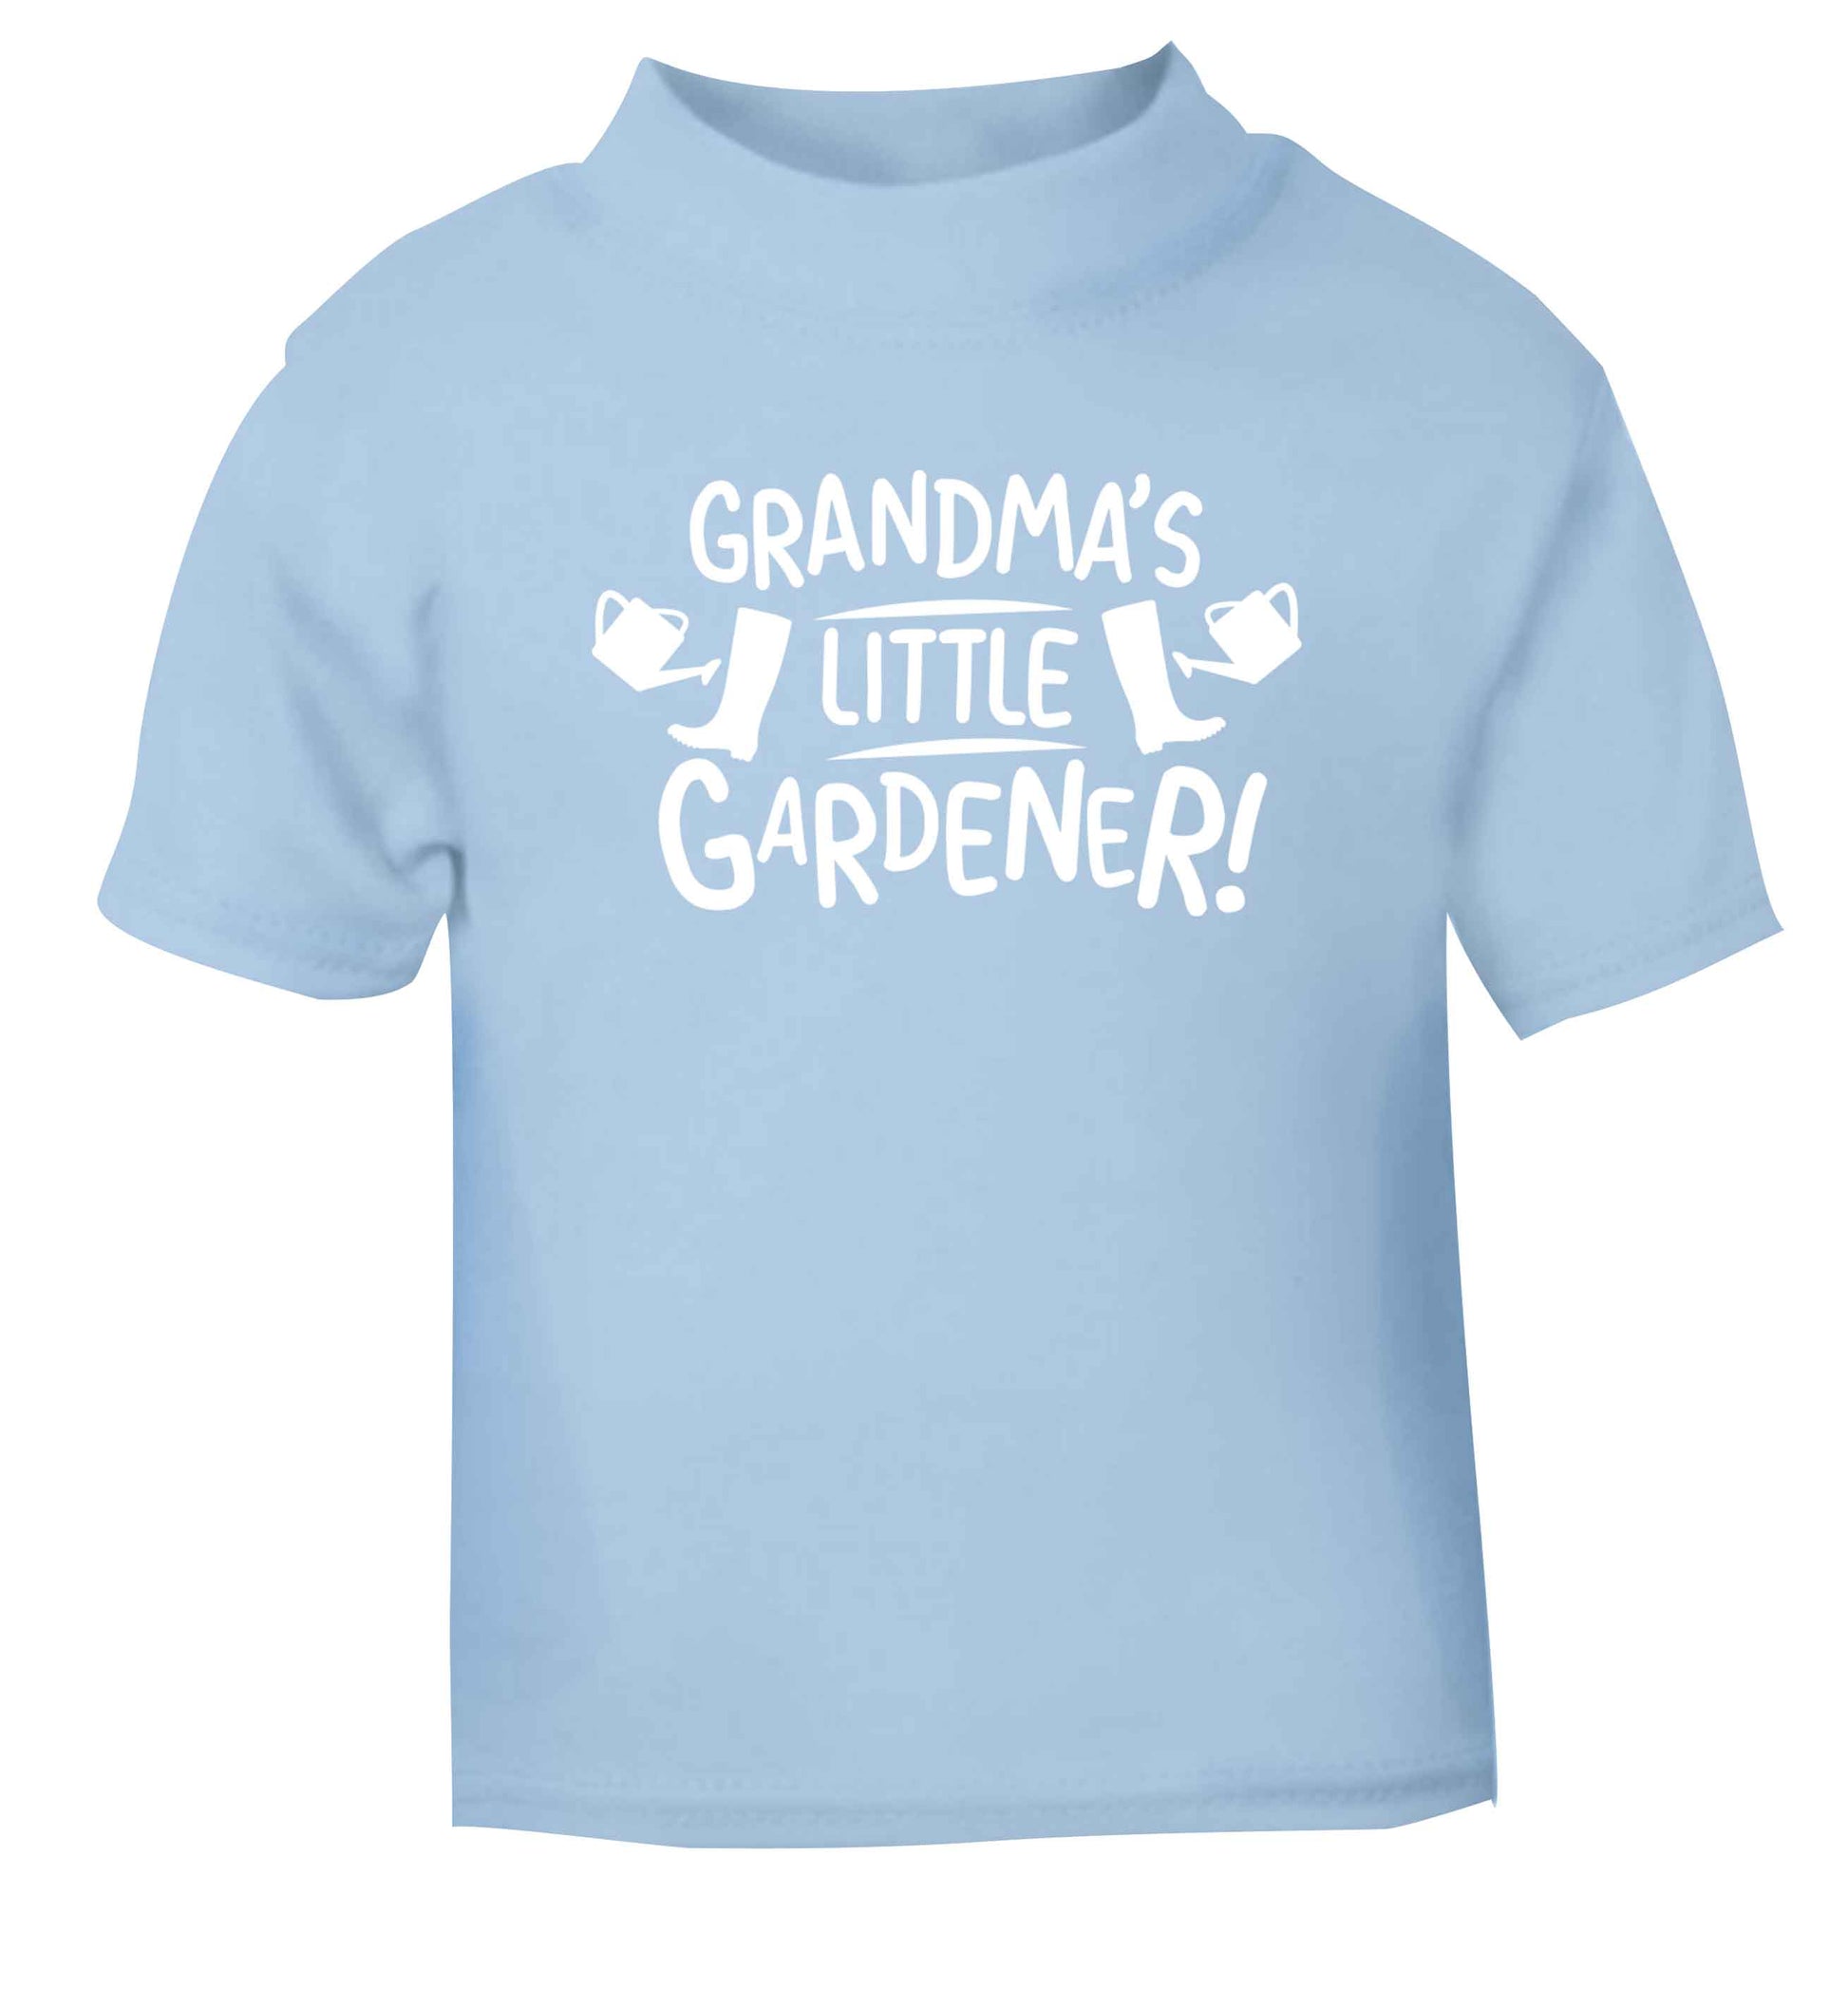 Grandma's little gardener light blue Baby Toddler Tshirt 2 Years